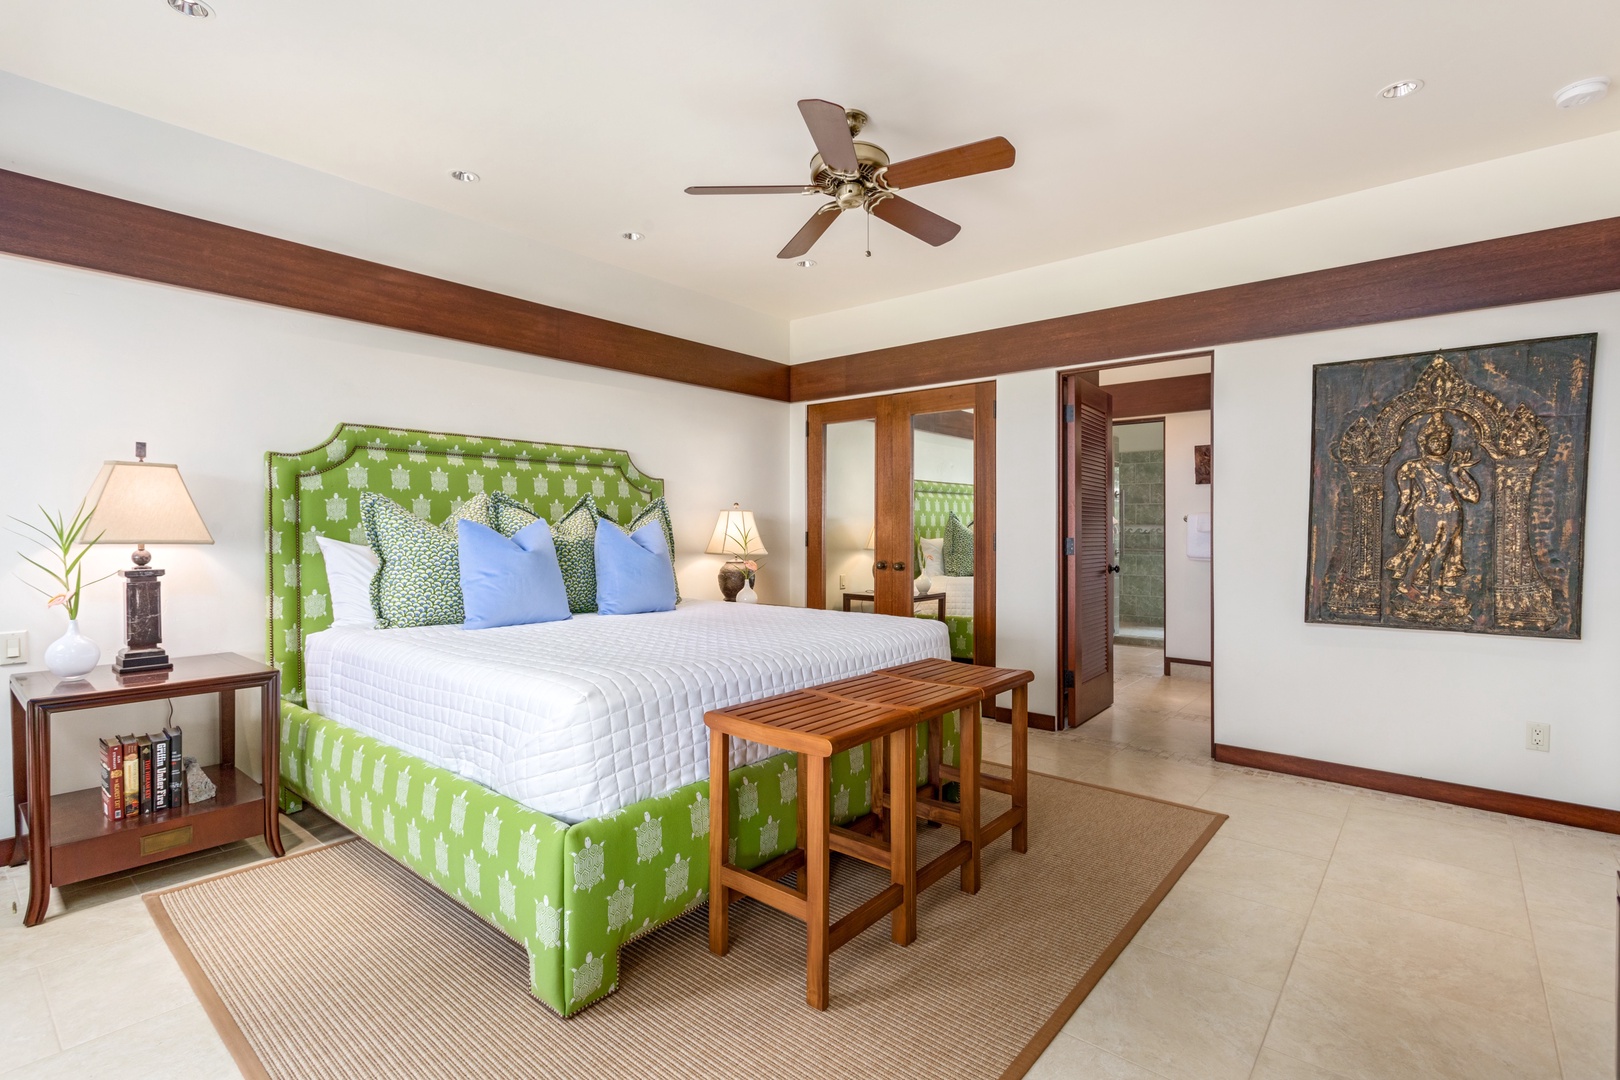 Kamuela Vacation Rentals, OFB 3BD Villas (39) at Mauna Kea Resort - Alternate view of second bedroom.